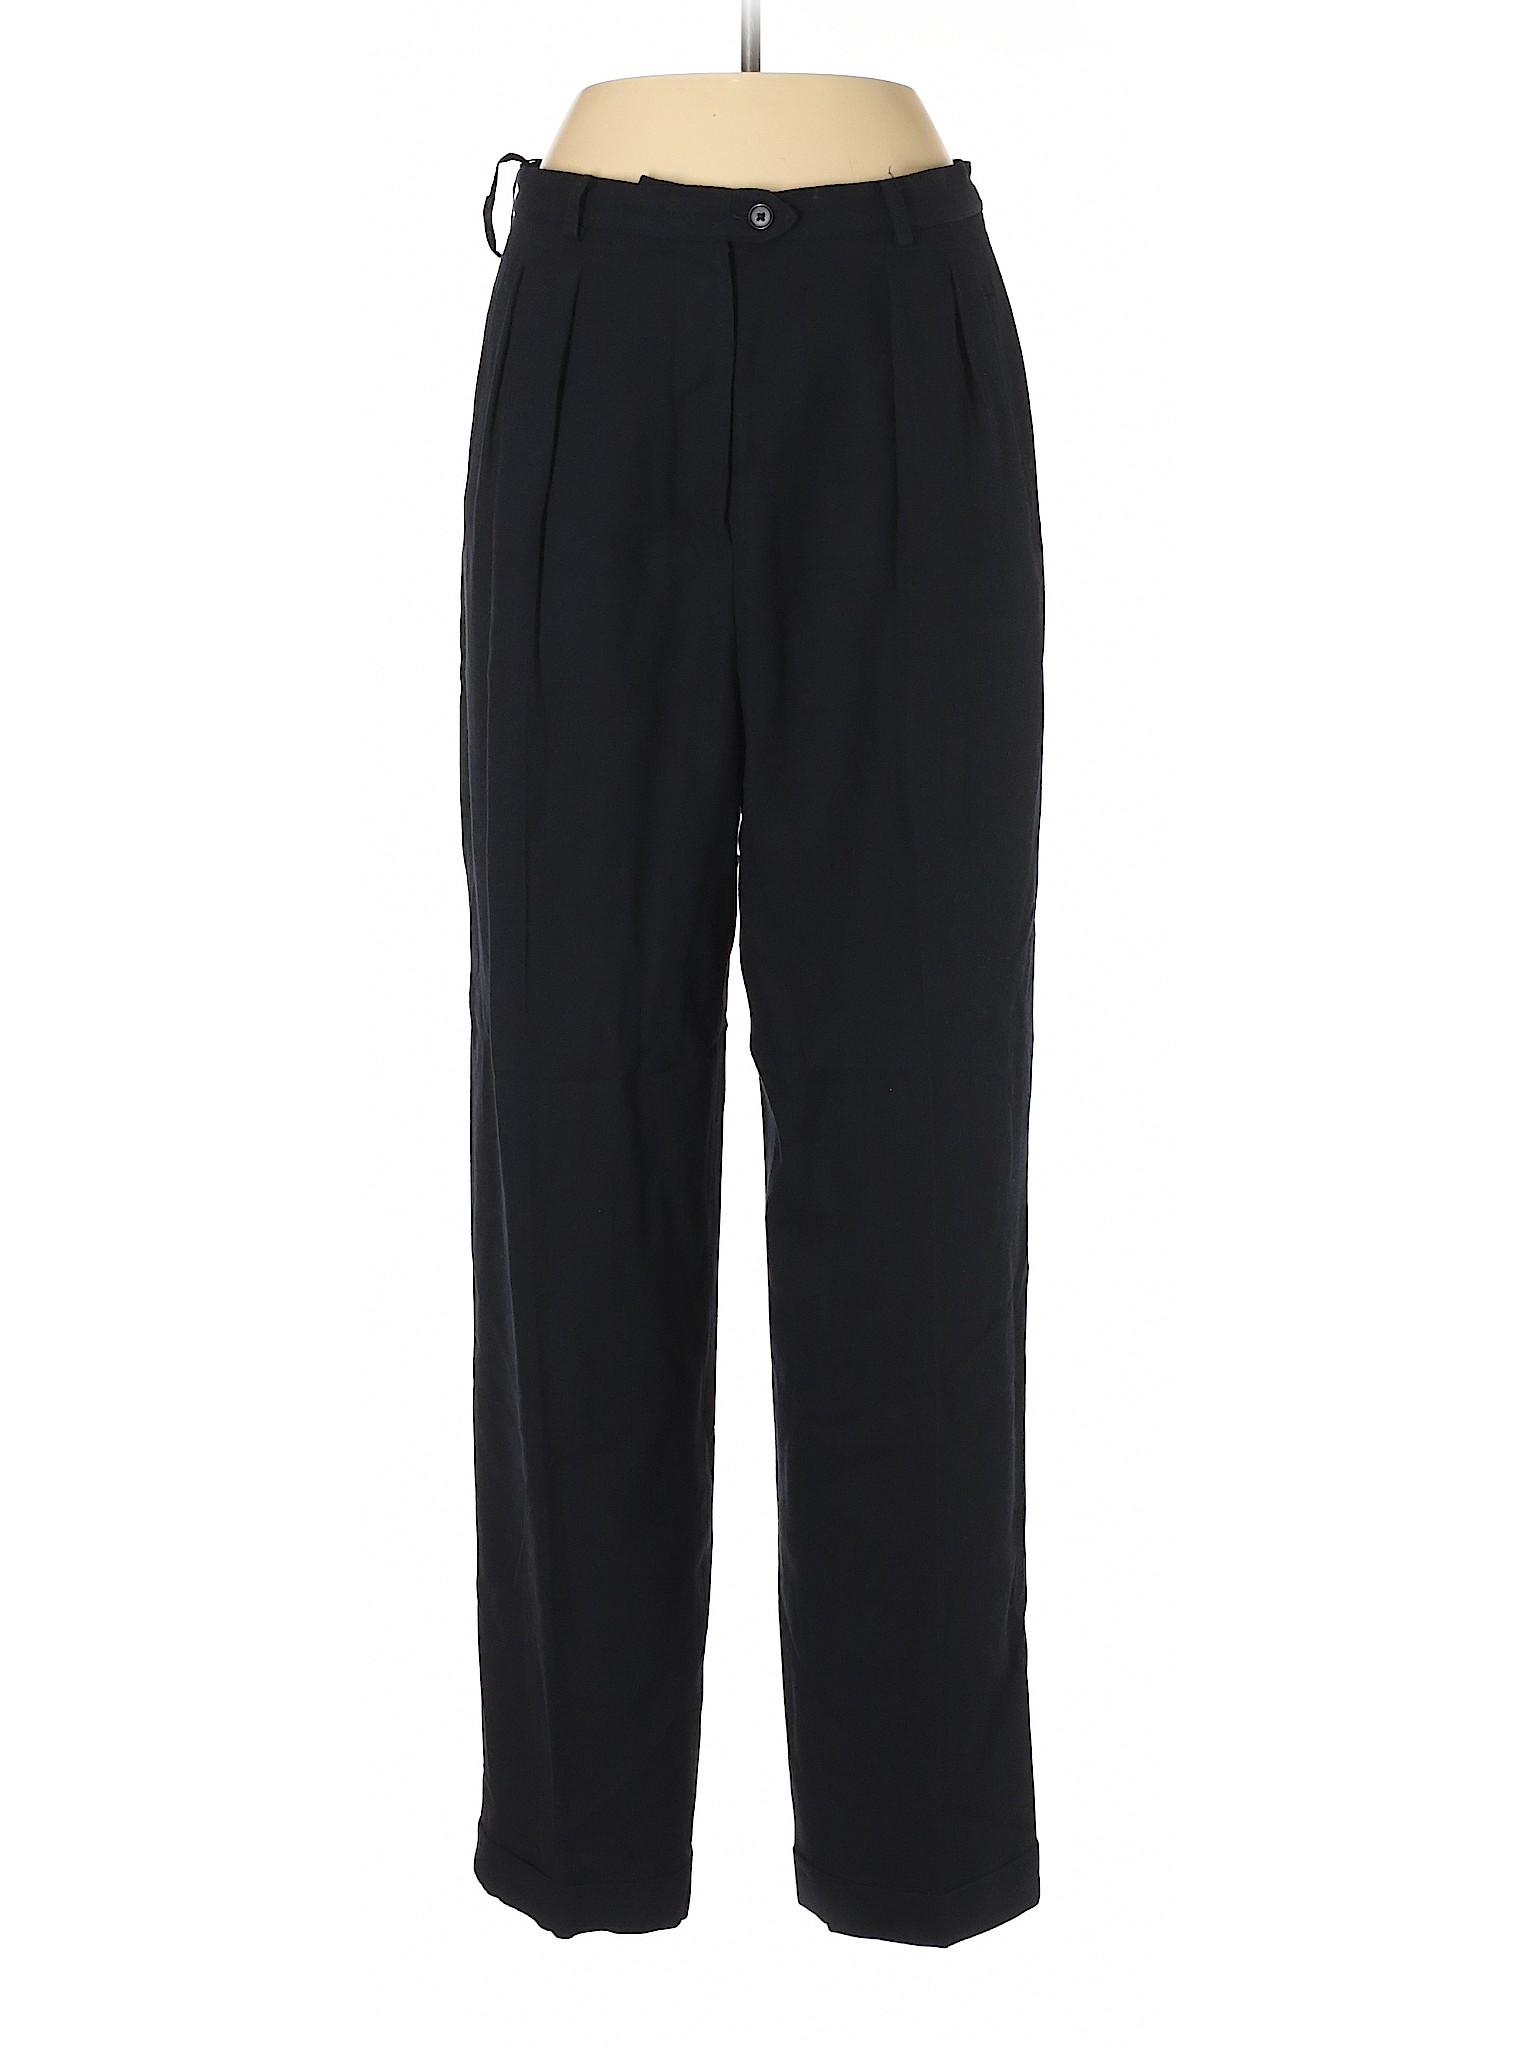 Lauren by Ralph Lauren Women Black Dress Pants 12 | eBay